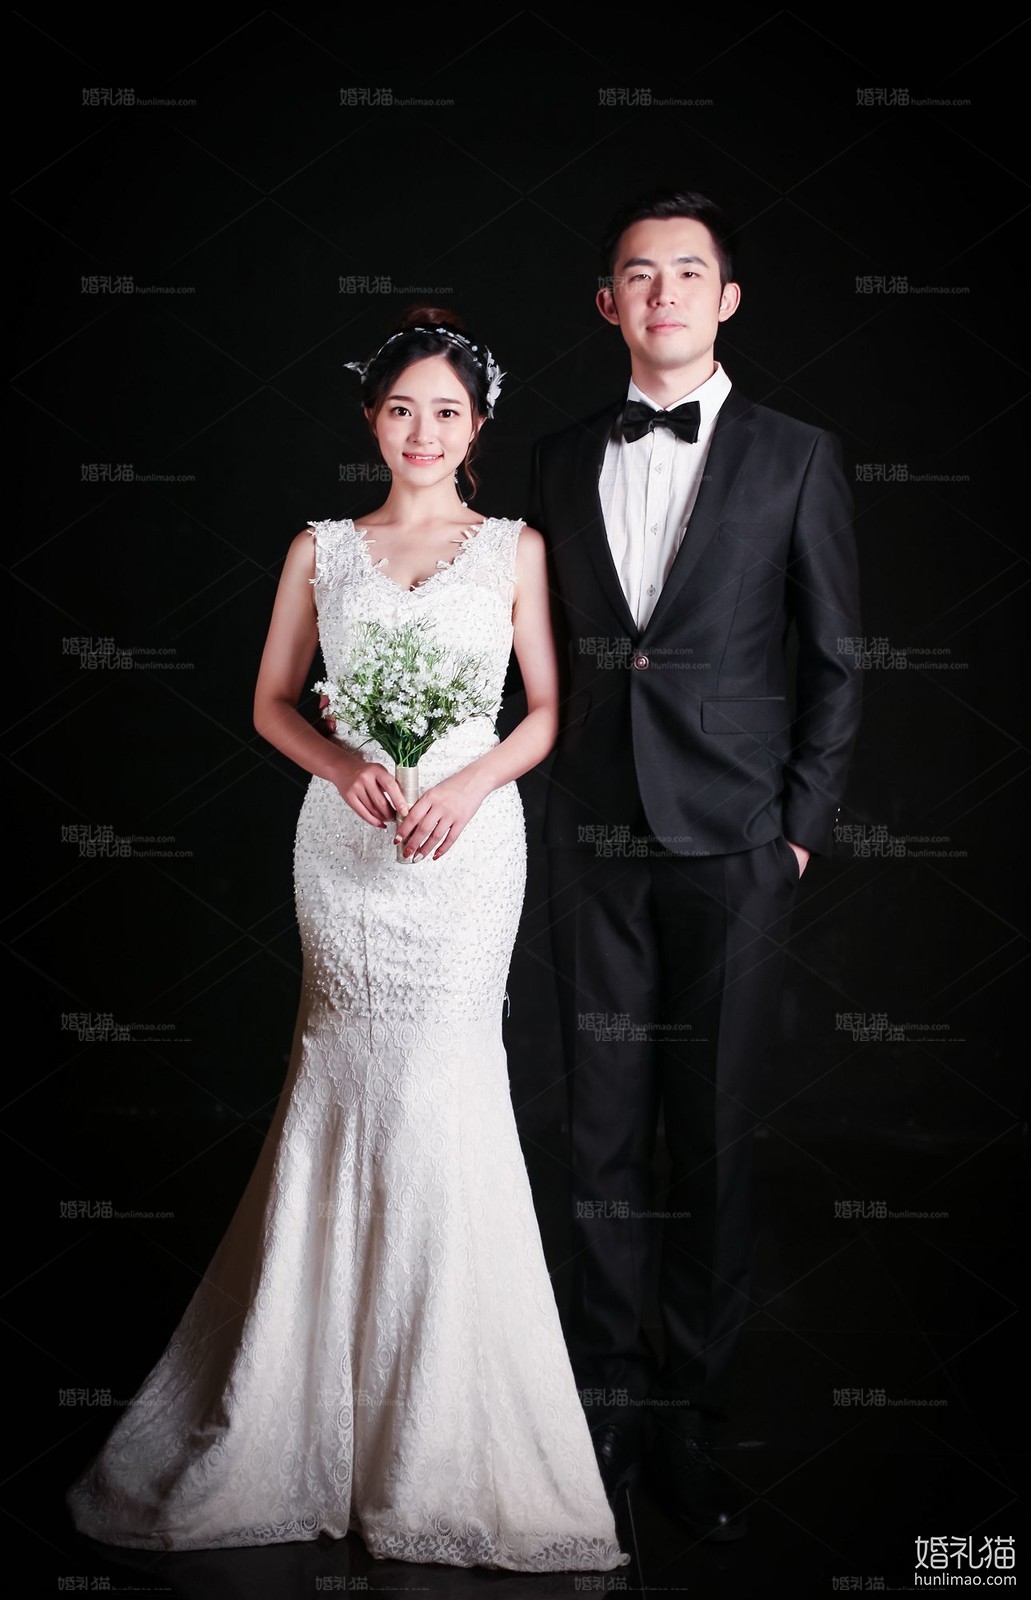 2017年10月上海婚纱照,,上海婚纱照,婚纱照图片